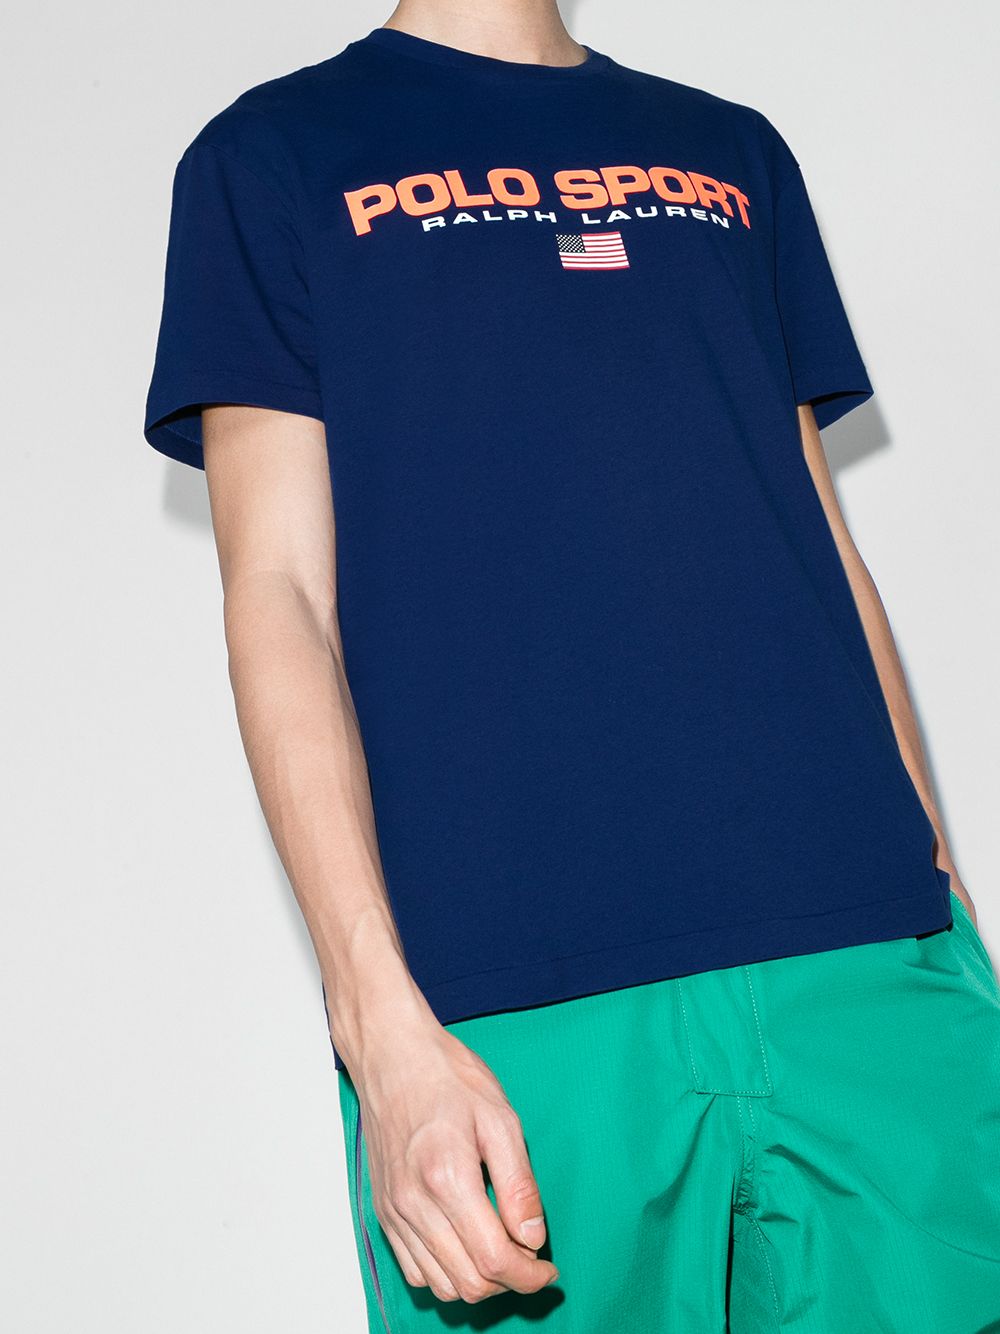 фото Polo ralph lauren футболка с логотипом